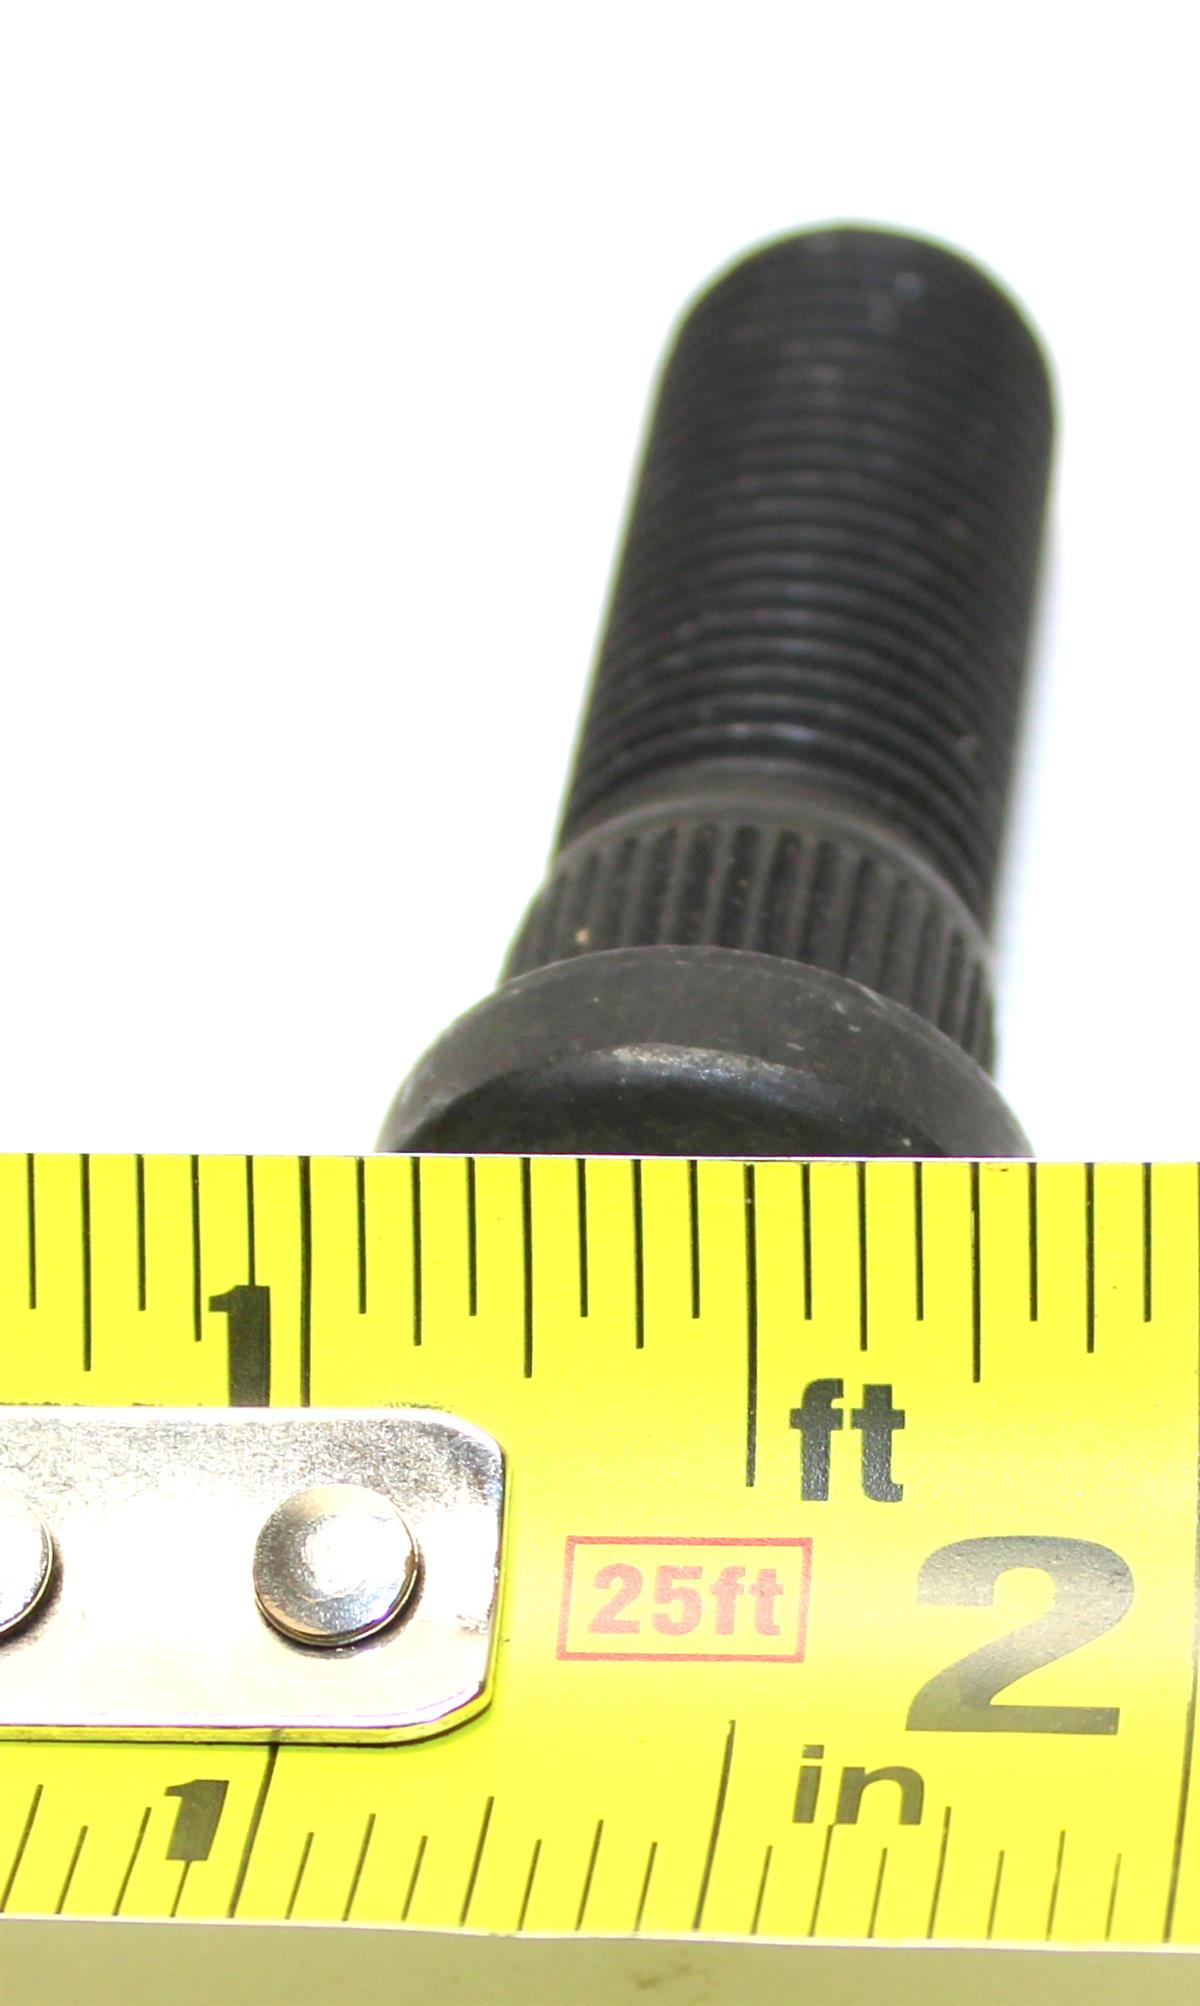 HM-3547 | HM-3547 9l6-18 X 1.50 Self Locking Stud Front Knuckle Geared Hub  (16).JPG